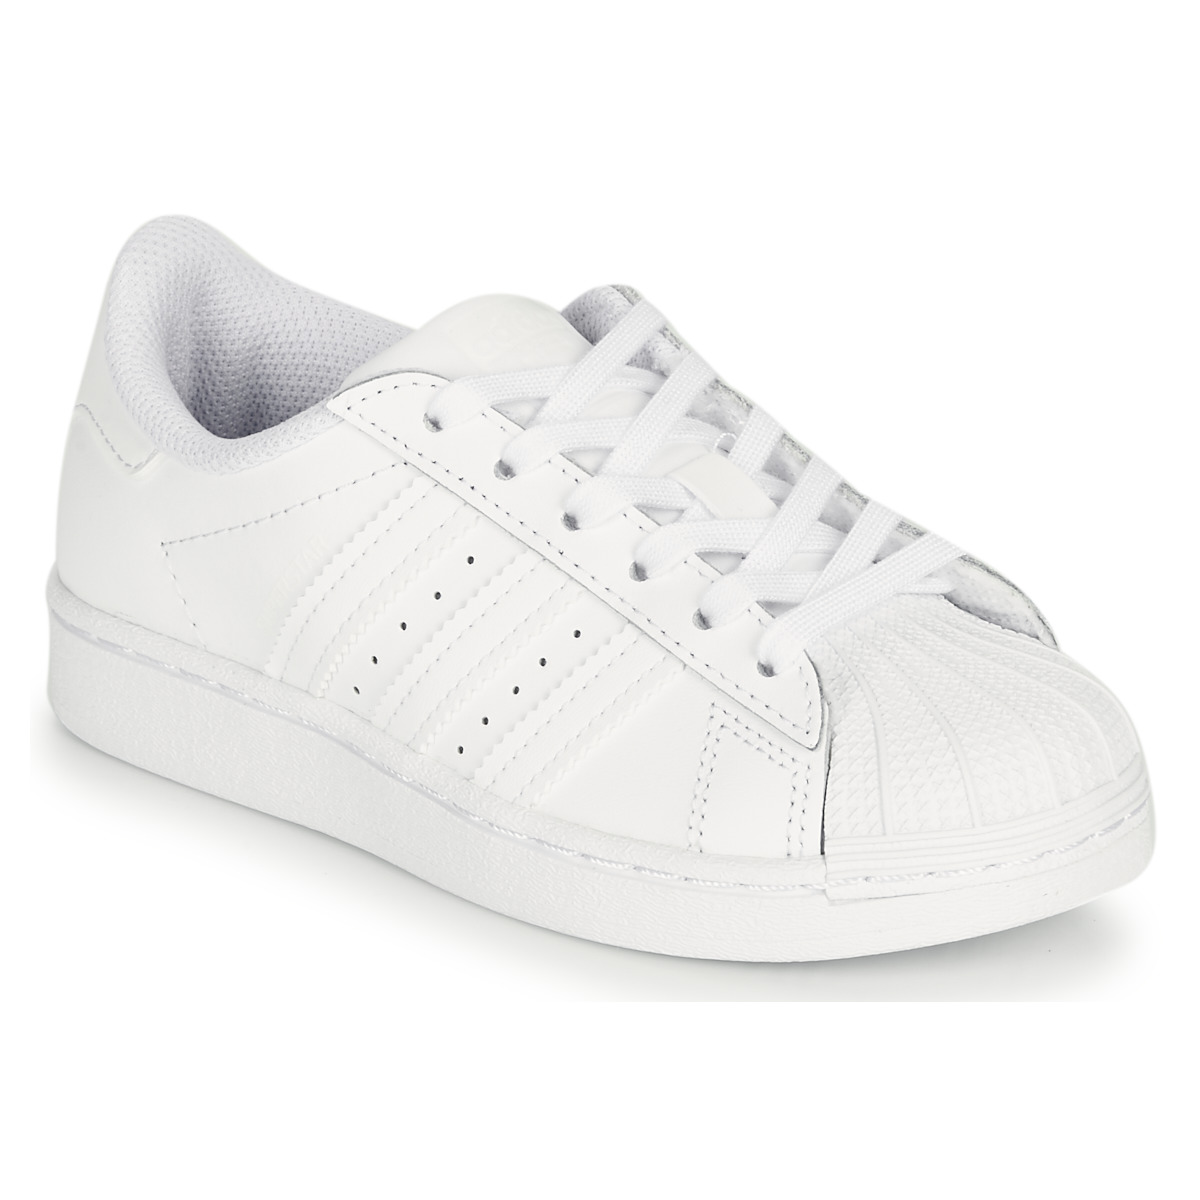 鞋子 儿童 球鞋基本款 Adidas Originals 阿迪达斯三叶草 SUPERSTAR C 白色